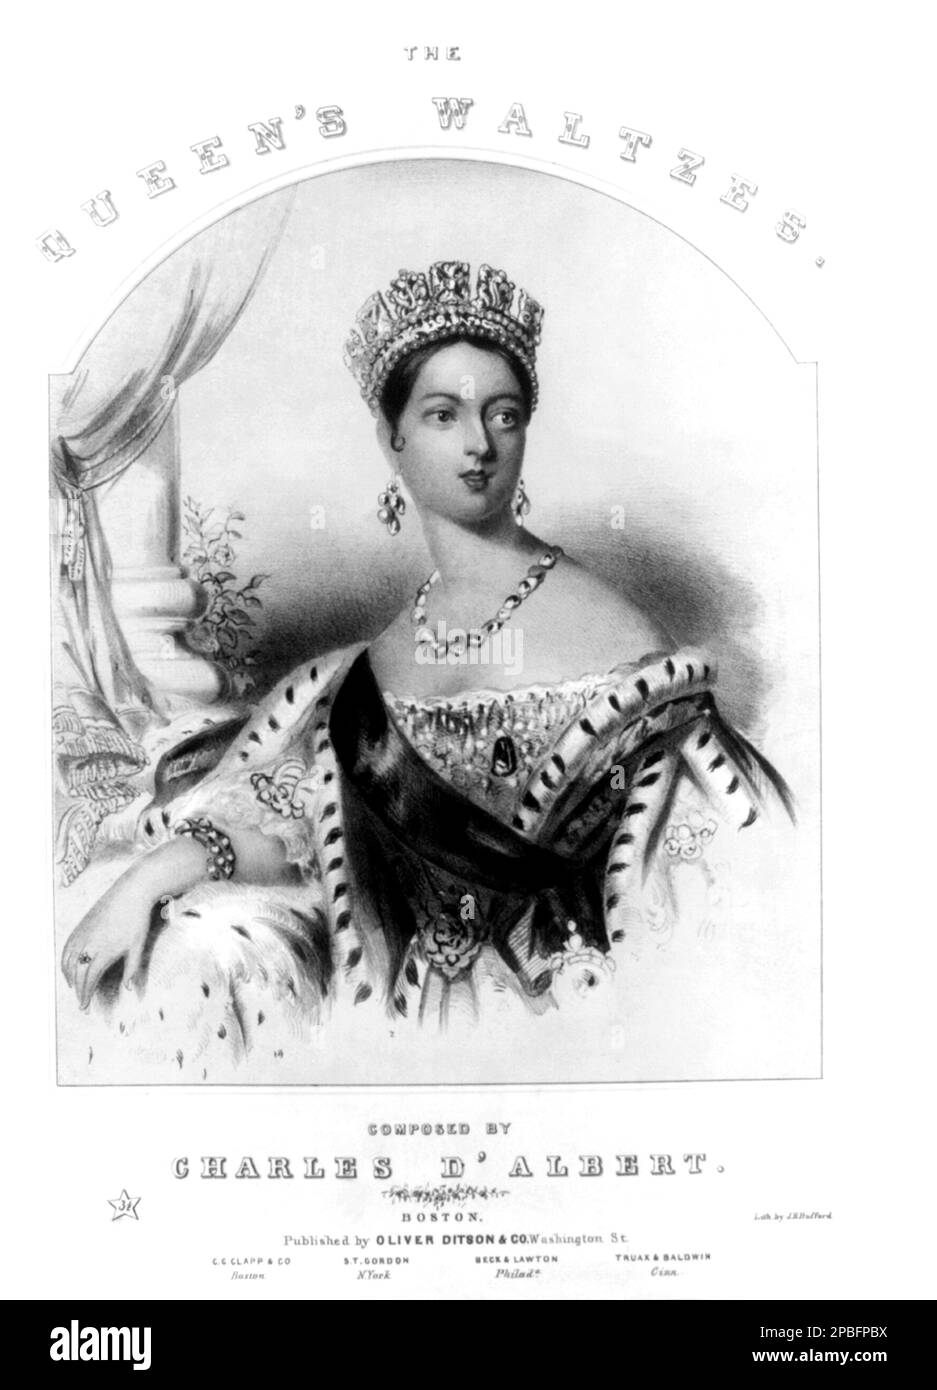 1837 , Washington , USA : Der Komponist CHARLES D'ALBERT, der WALZER DER KÖNIGIN, gewidmet der Königin VICTORIA von England - SPARTITO MUSICALE - COMPOSITORE - OPERA LIRICA - CLASSICA - KLASSISCH - PORTRÄT - RITRATTO - Walzer - WALTZ - Regina Vittoria d' Inghilterra - Großbritannien - Reingali - USA - Könige - UK - Crown - Corona --- ARCHIVIO GBB Stockfoto